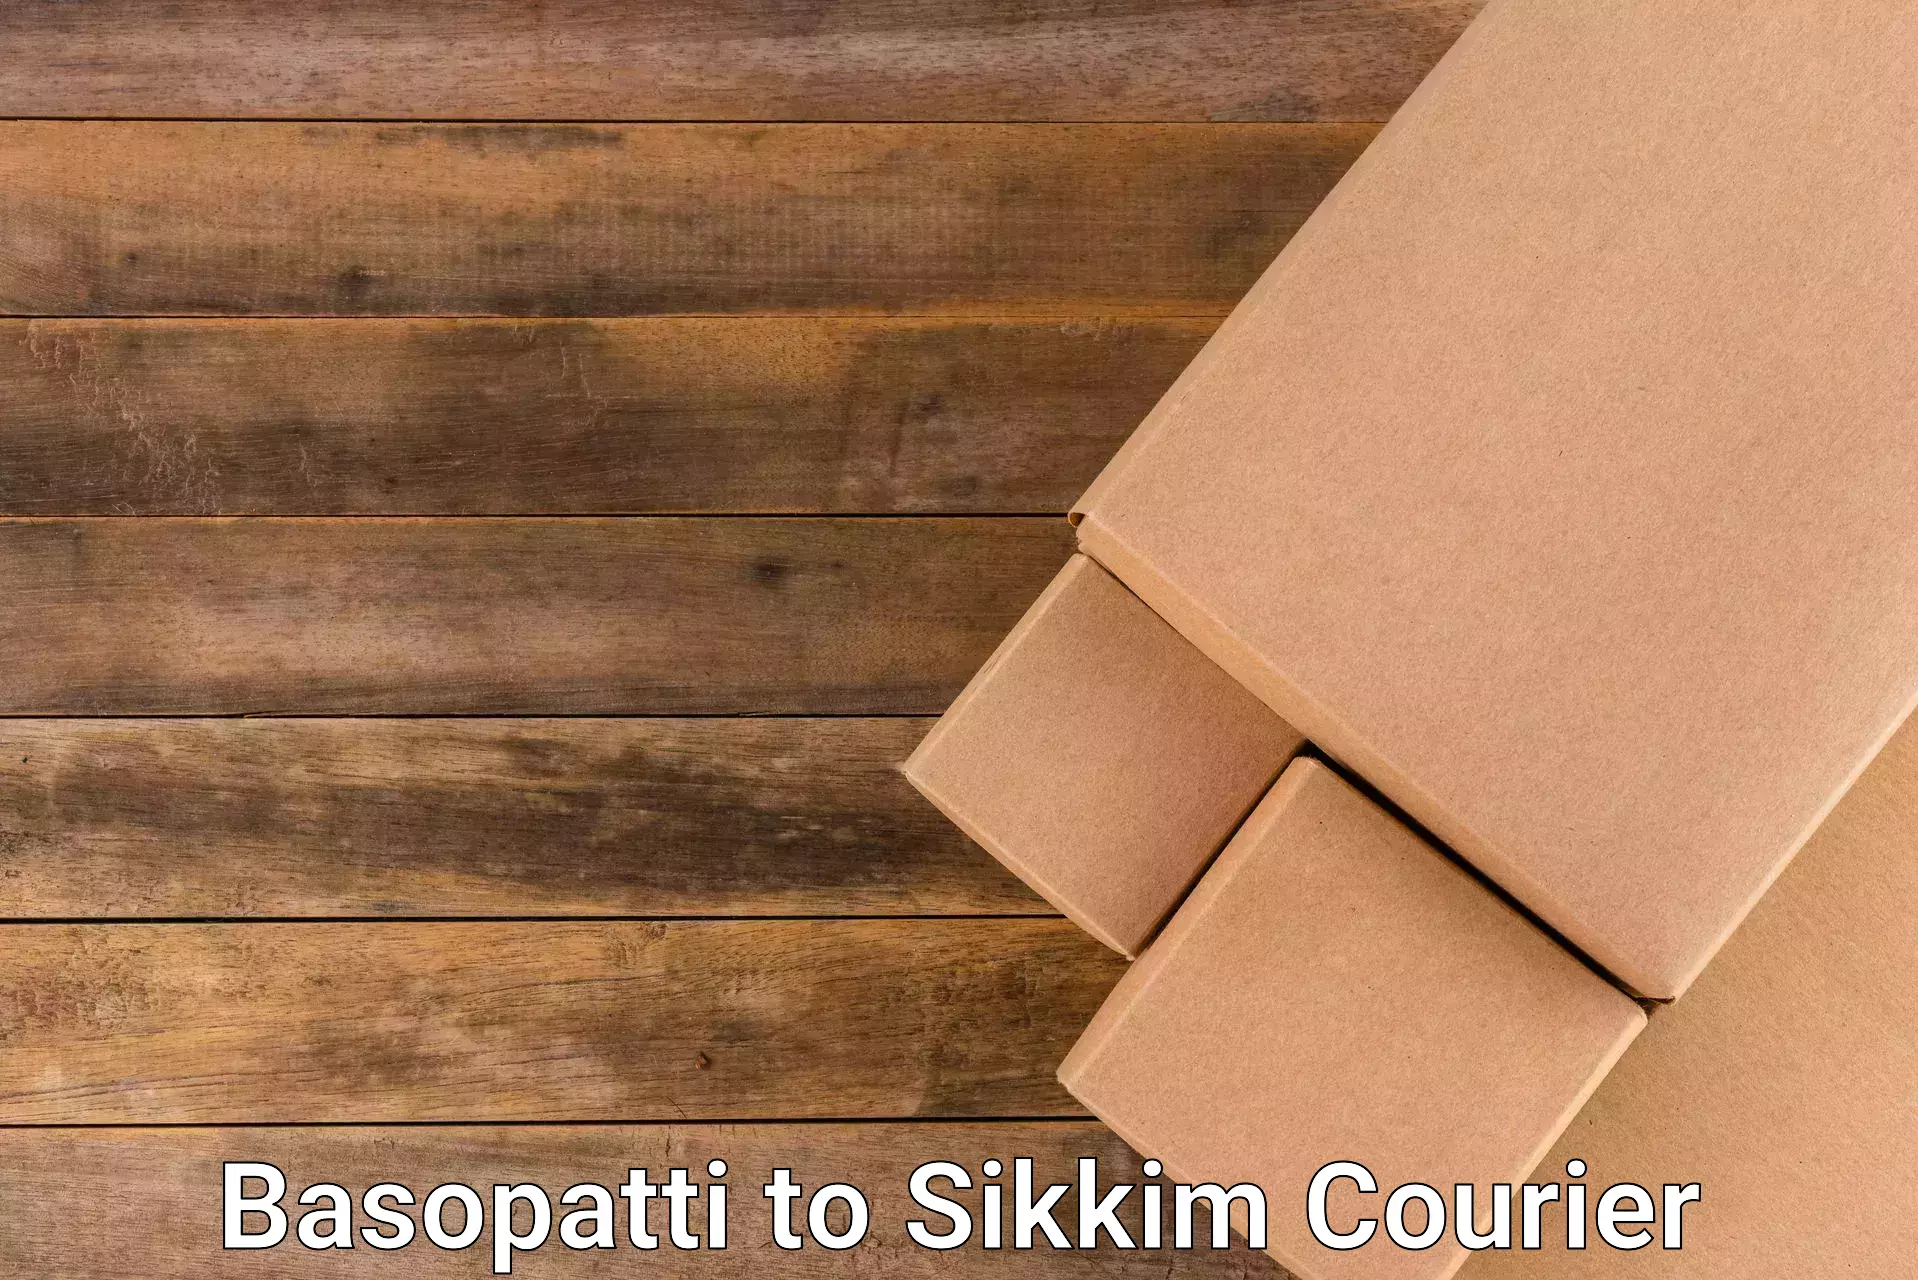 Courier service comparison Basopatti to Sikkim